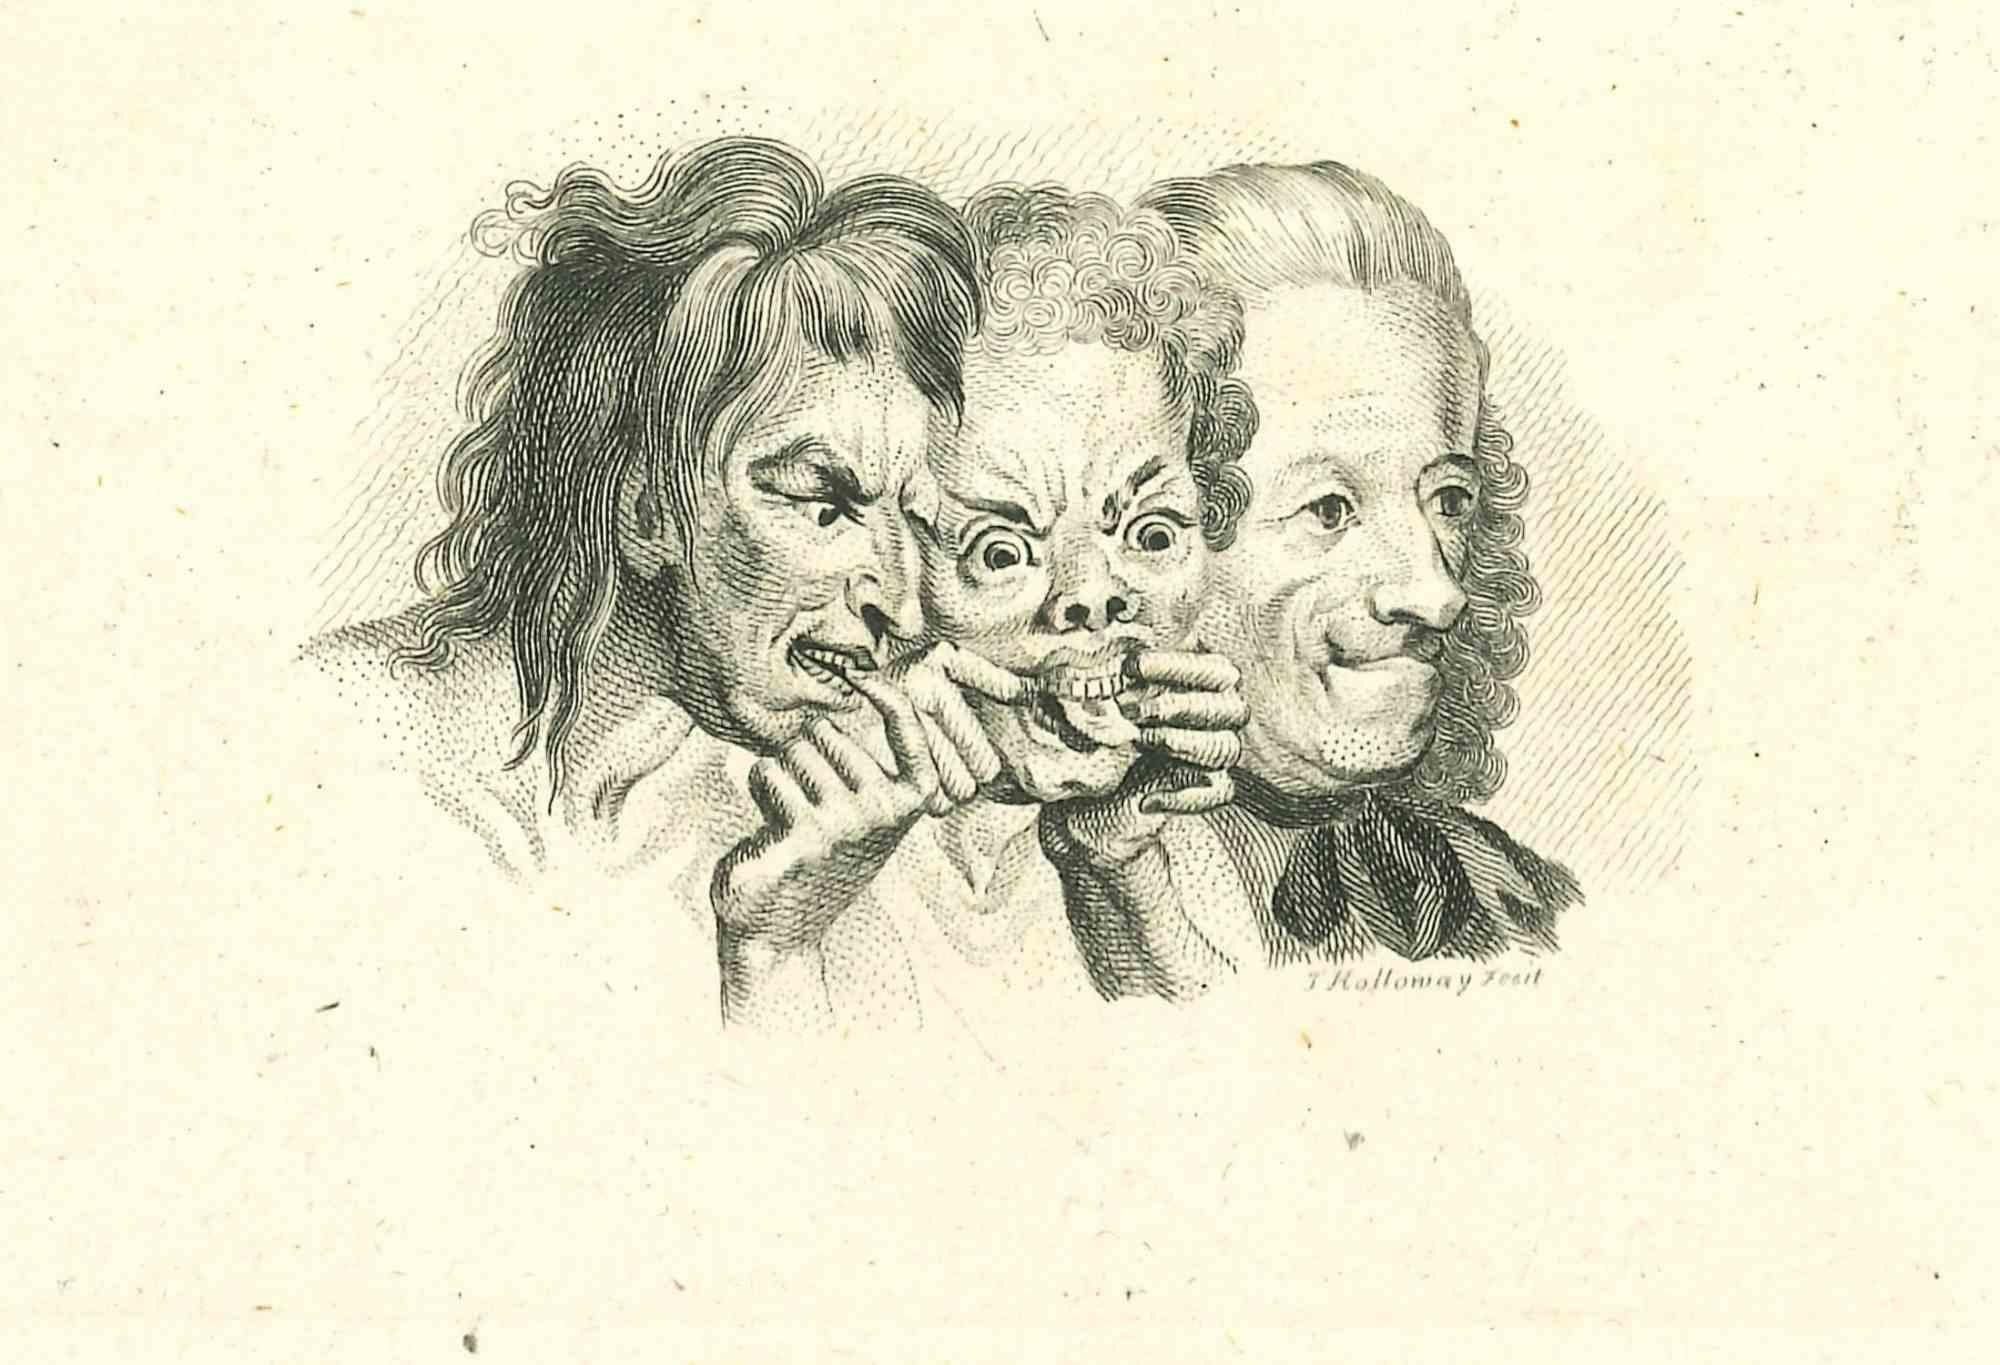 Three Grotesque Characters ist eine Originalvorlage von Thomas Holloway für Johann Caspar Lavater's  "Essays on Physiognomy, Designed to promote the Knowledge and the Love of Mankind", London, Bensley, 1810. 

 Dieses Kunstwerk stellt Köpfe von